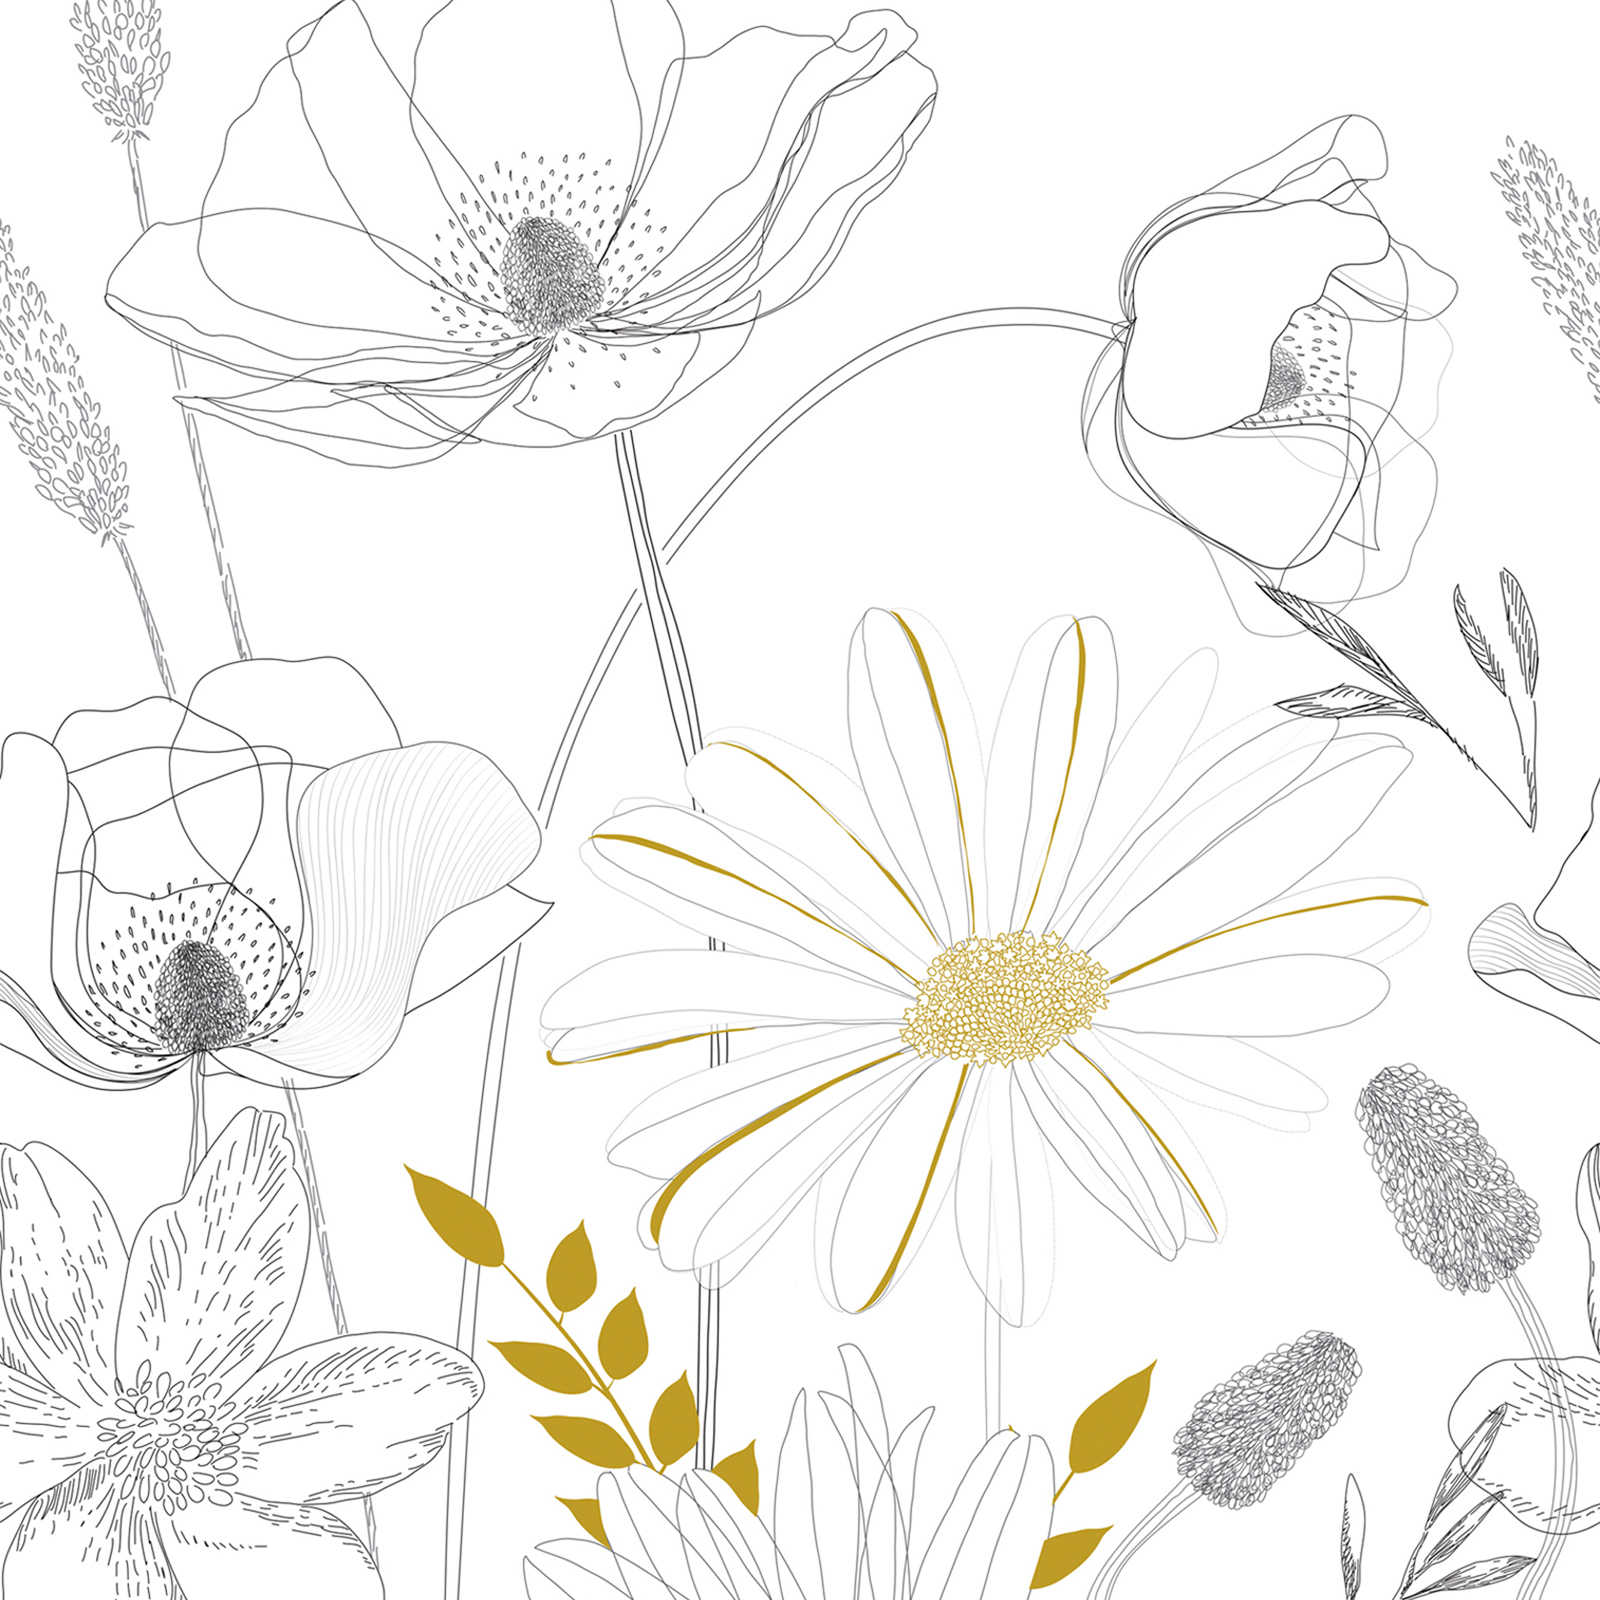 papier peint à motifs floraux dessinés avec des accents de couleur - blanc, noir, jaune
